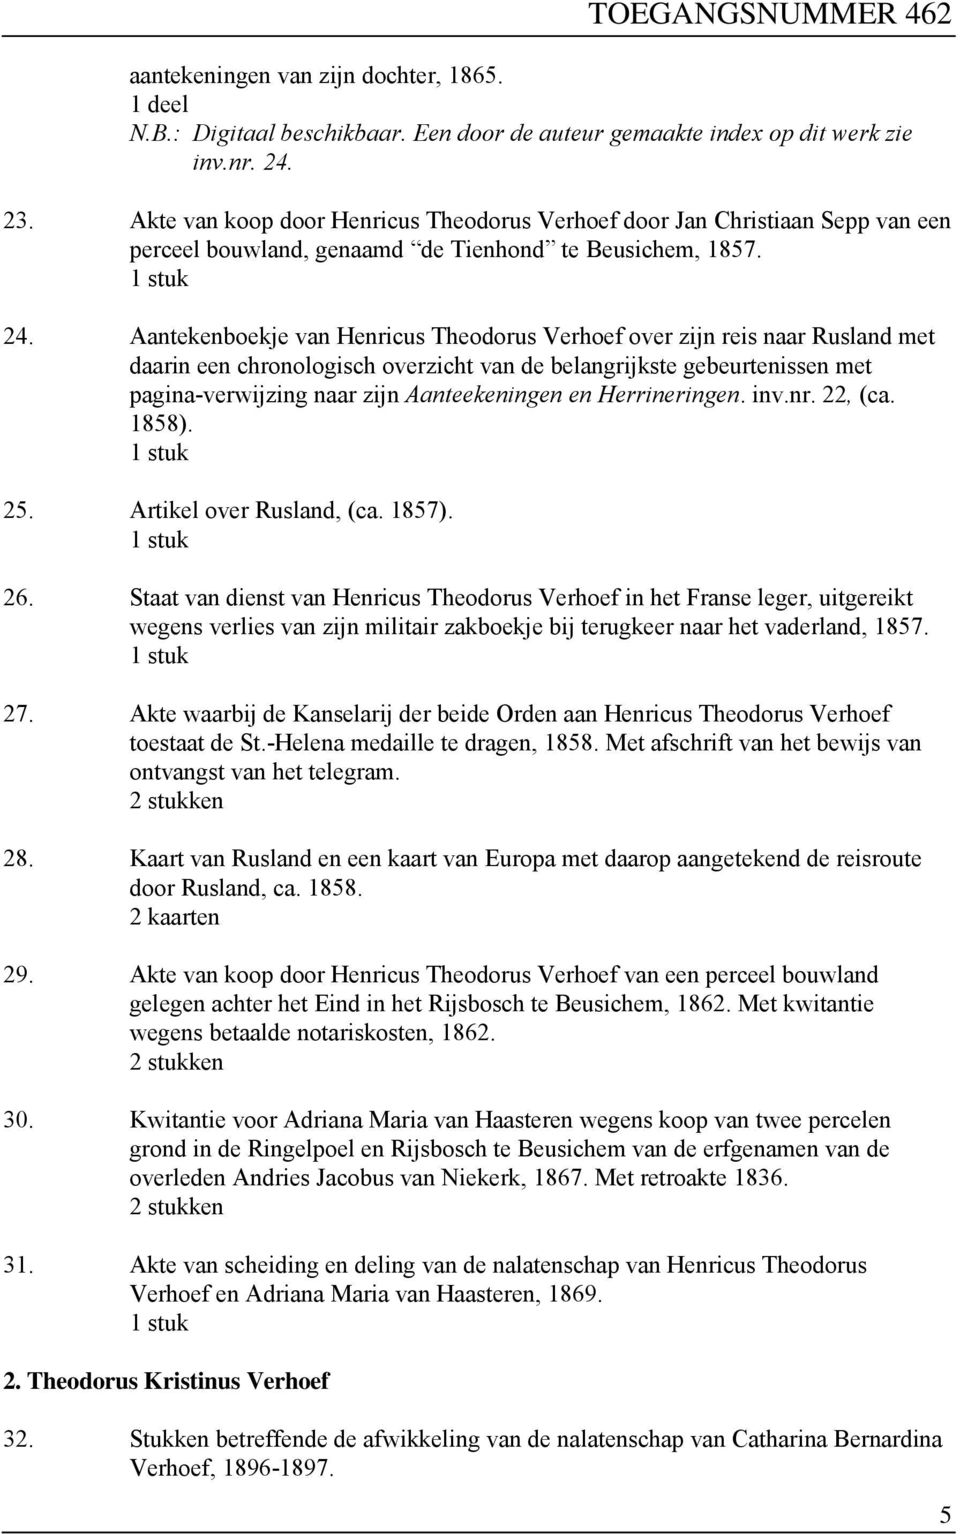 Aantekenboekje van Henricus Theodorus Verhoef over zijn reis naar Rusland met daarin een chronologisch overzicht van de belangrijkste gebeurtenissen met pagina-verwijzing naar zijn Aanteekeningen en